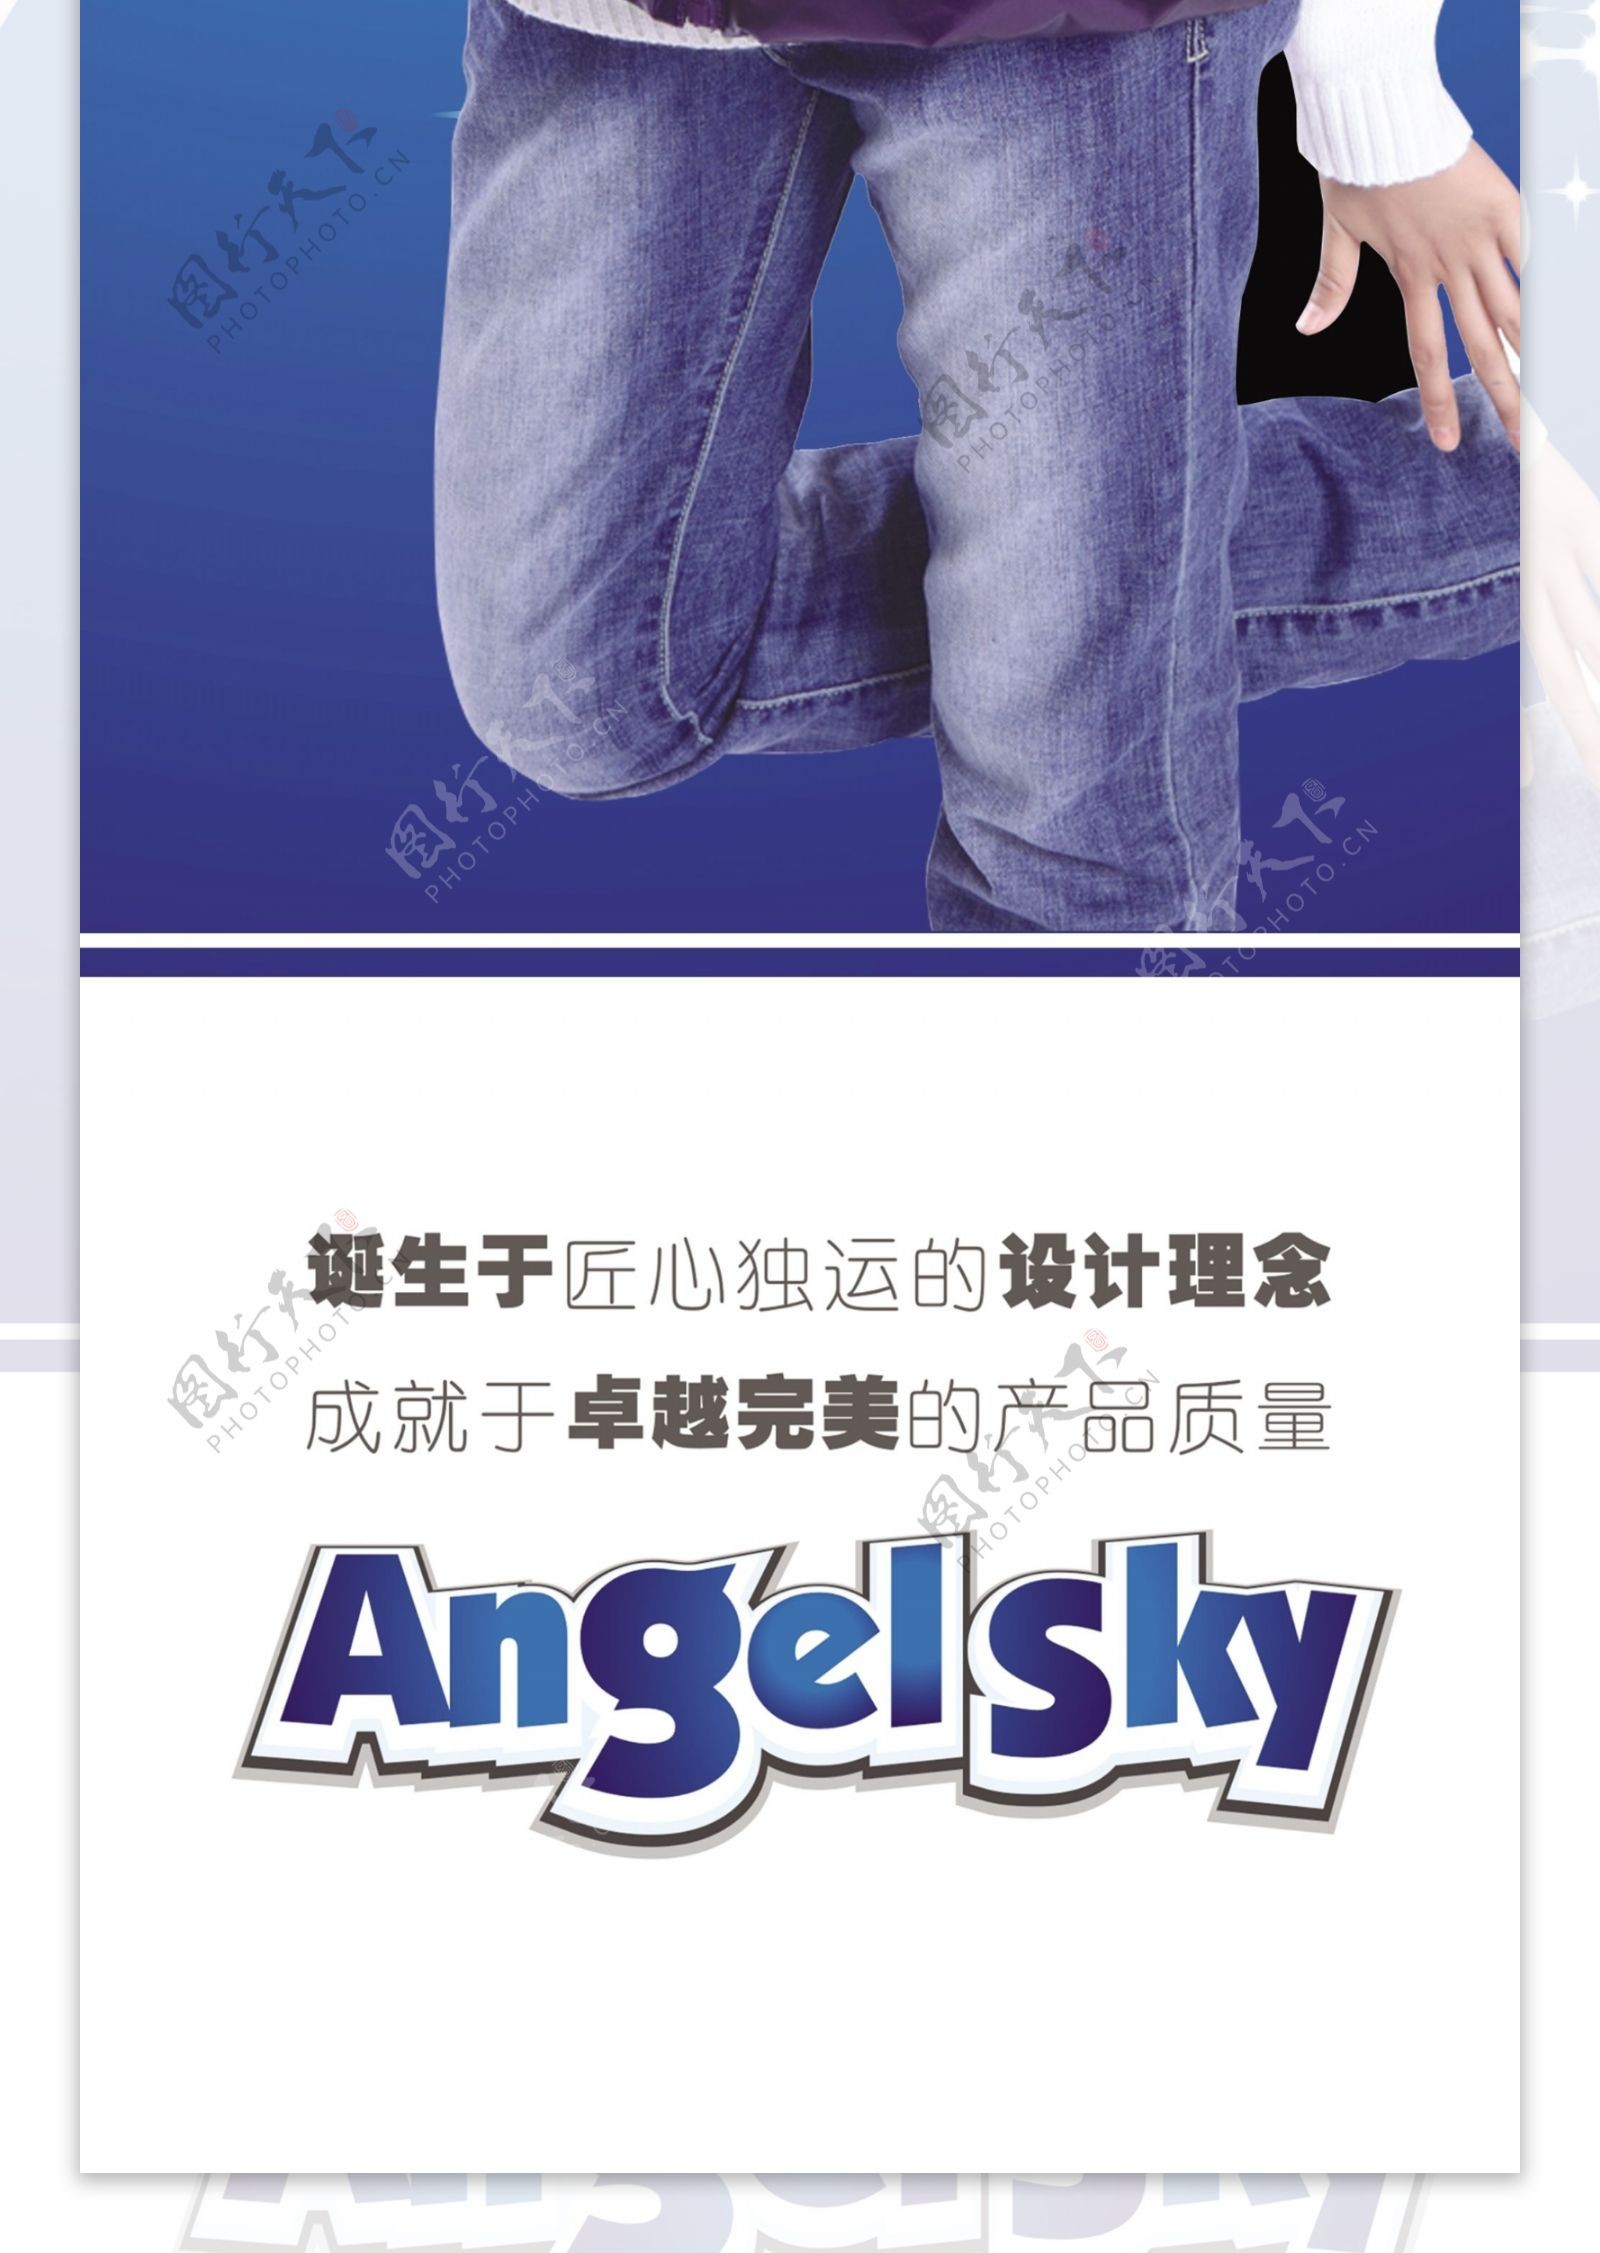 空中天使angelsky图片